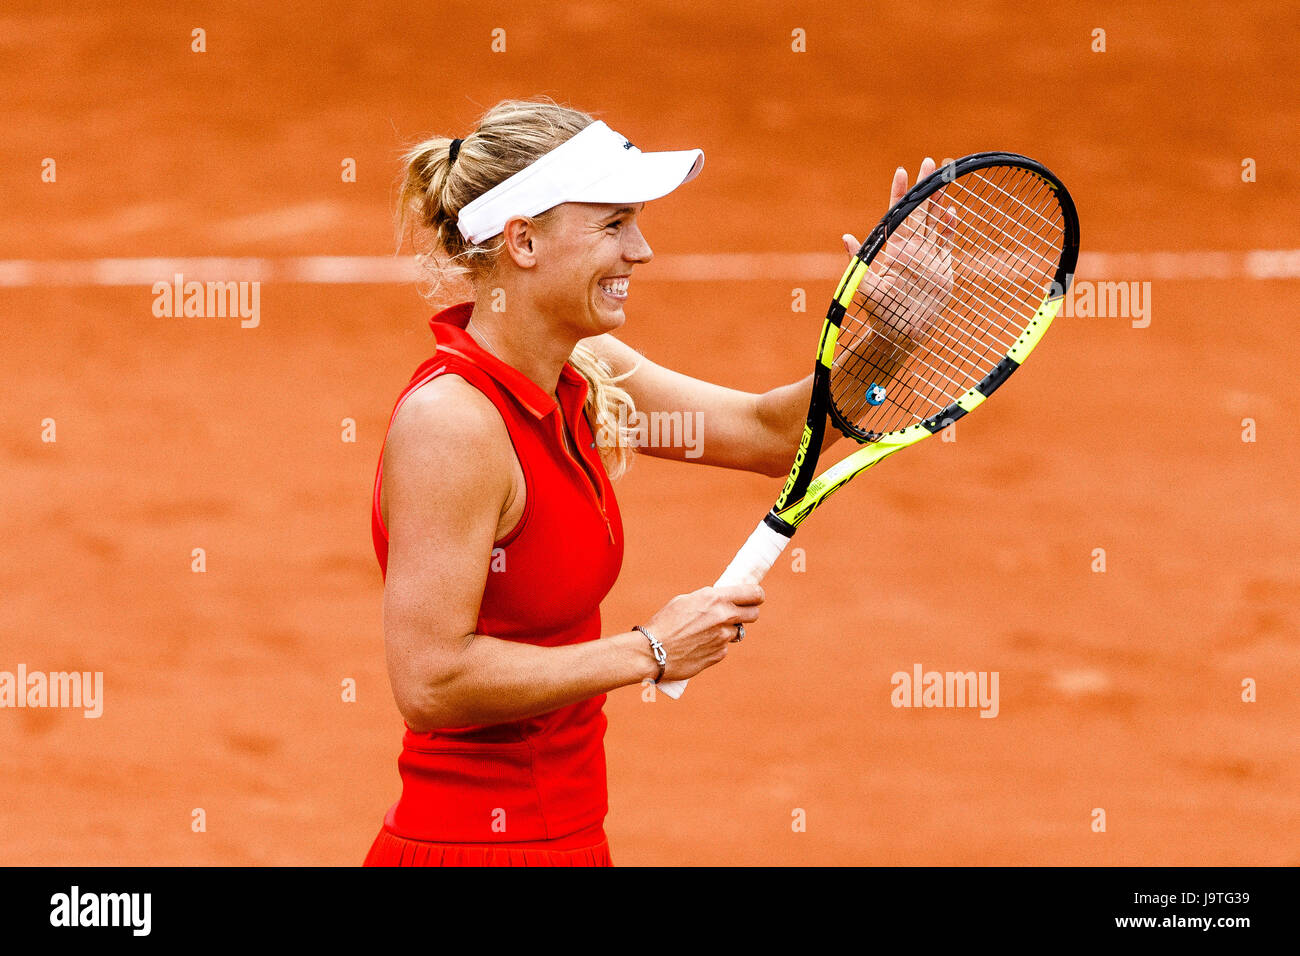 Paris, France, 3 juin 2017 : Caroline Wozniacki joueur danois est en action au cours de son 3e tour à l'Open de France de Tennis 2017 à Roland Garros Paris. Crédit : Frank Molter/Alamy Live News Banque D'Images